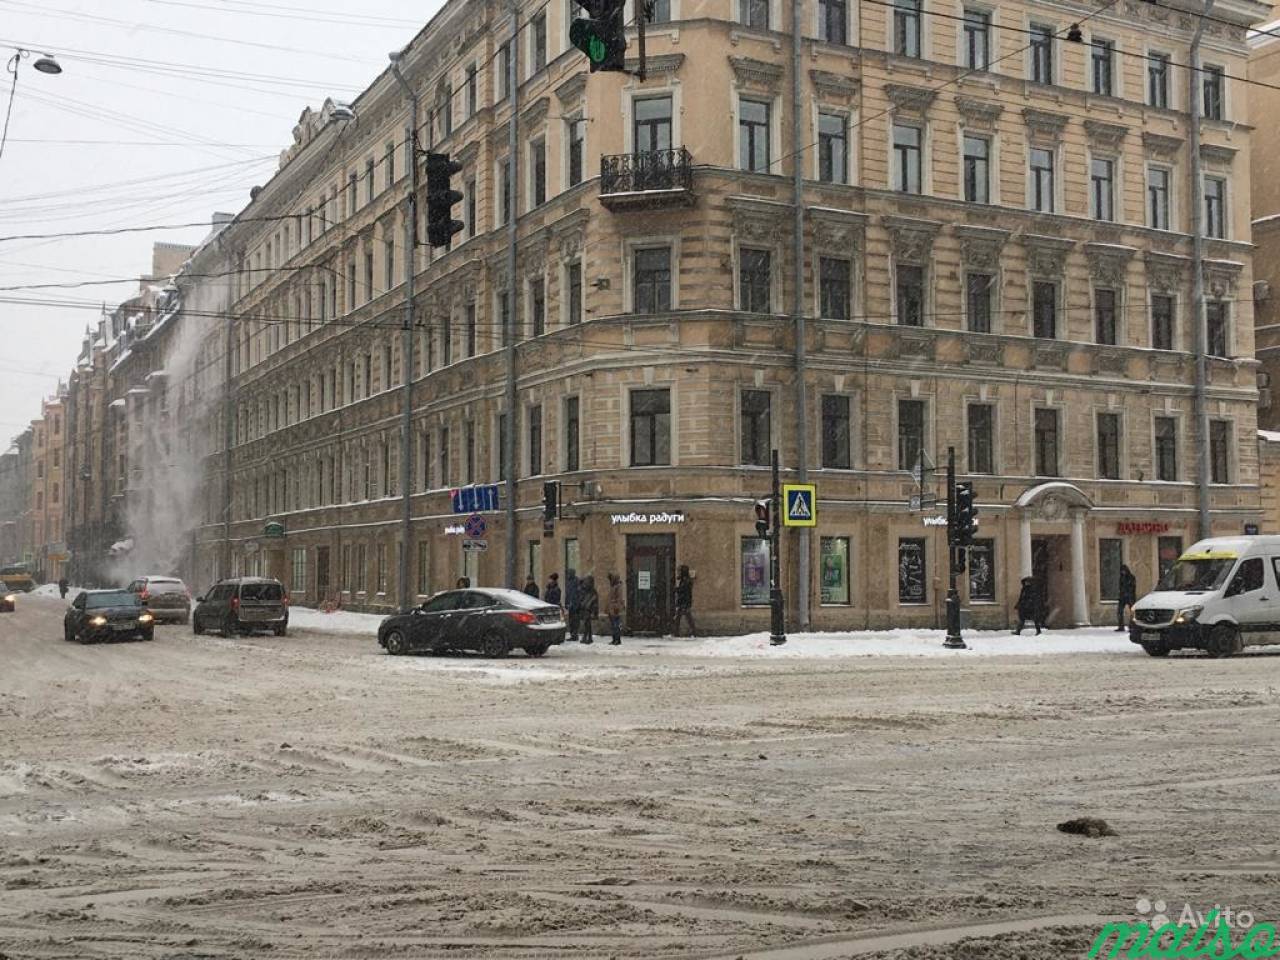 Торговое помещение с витринами, 135 м² на Невском в Санкт-Петербурге. Фото 1